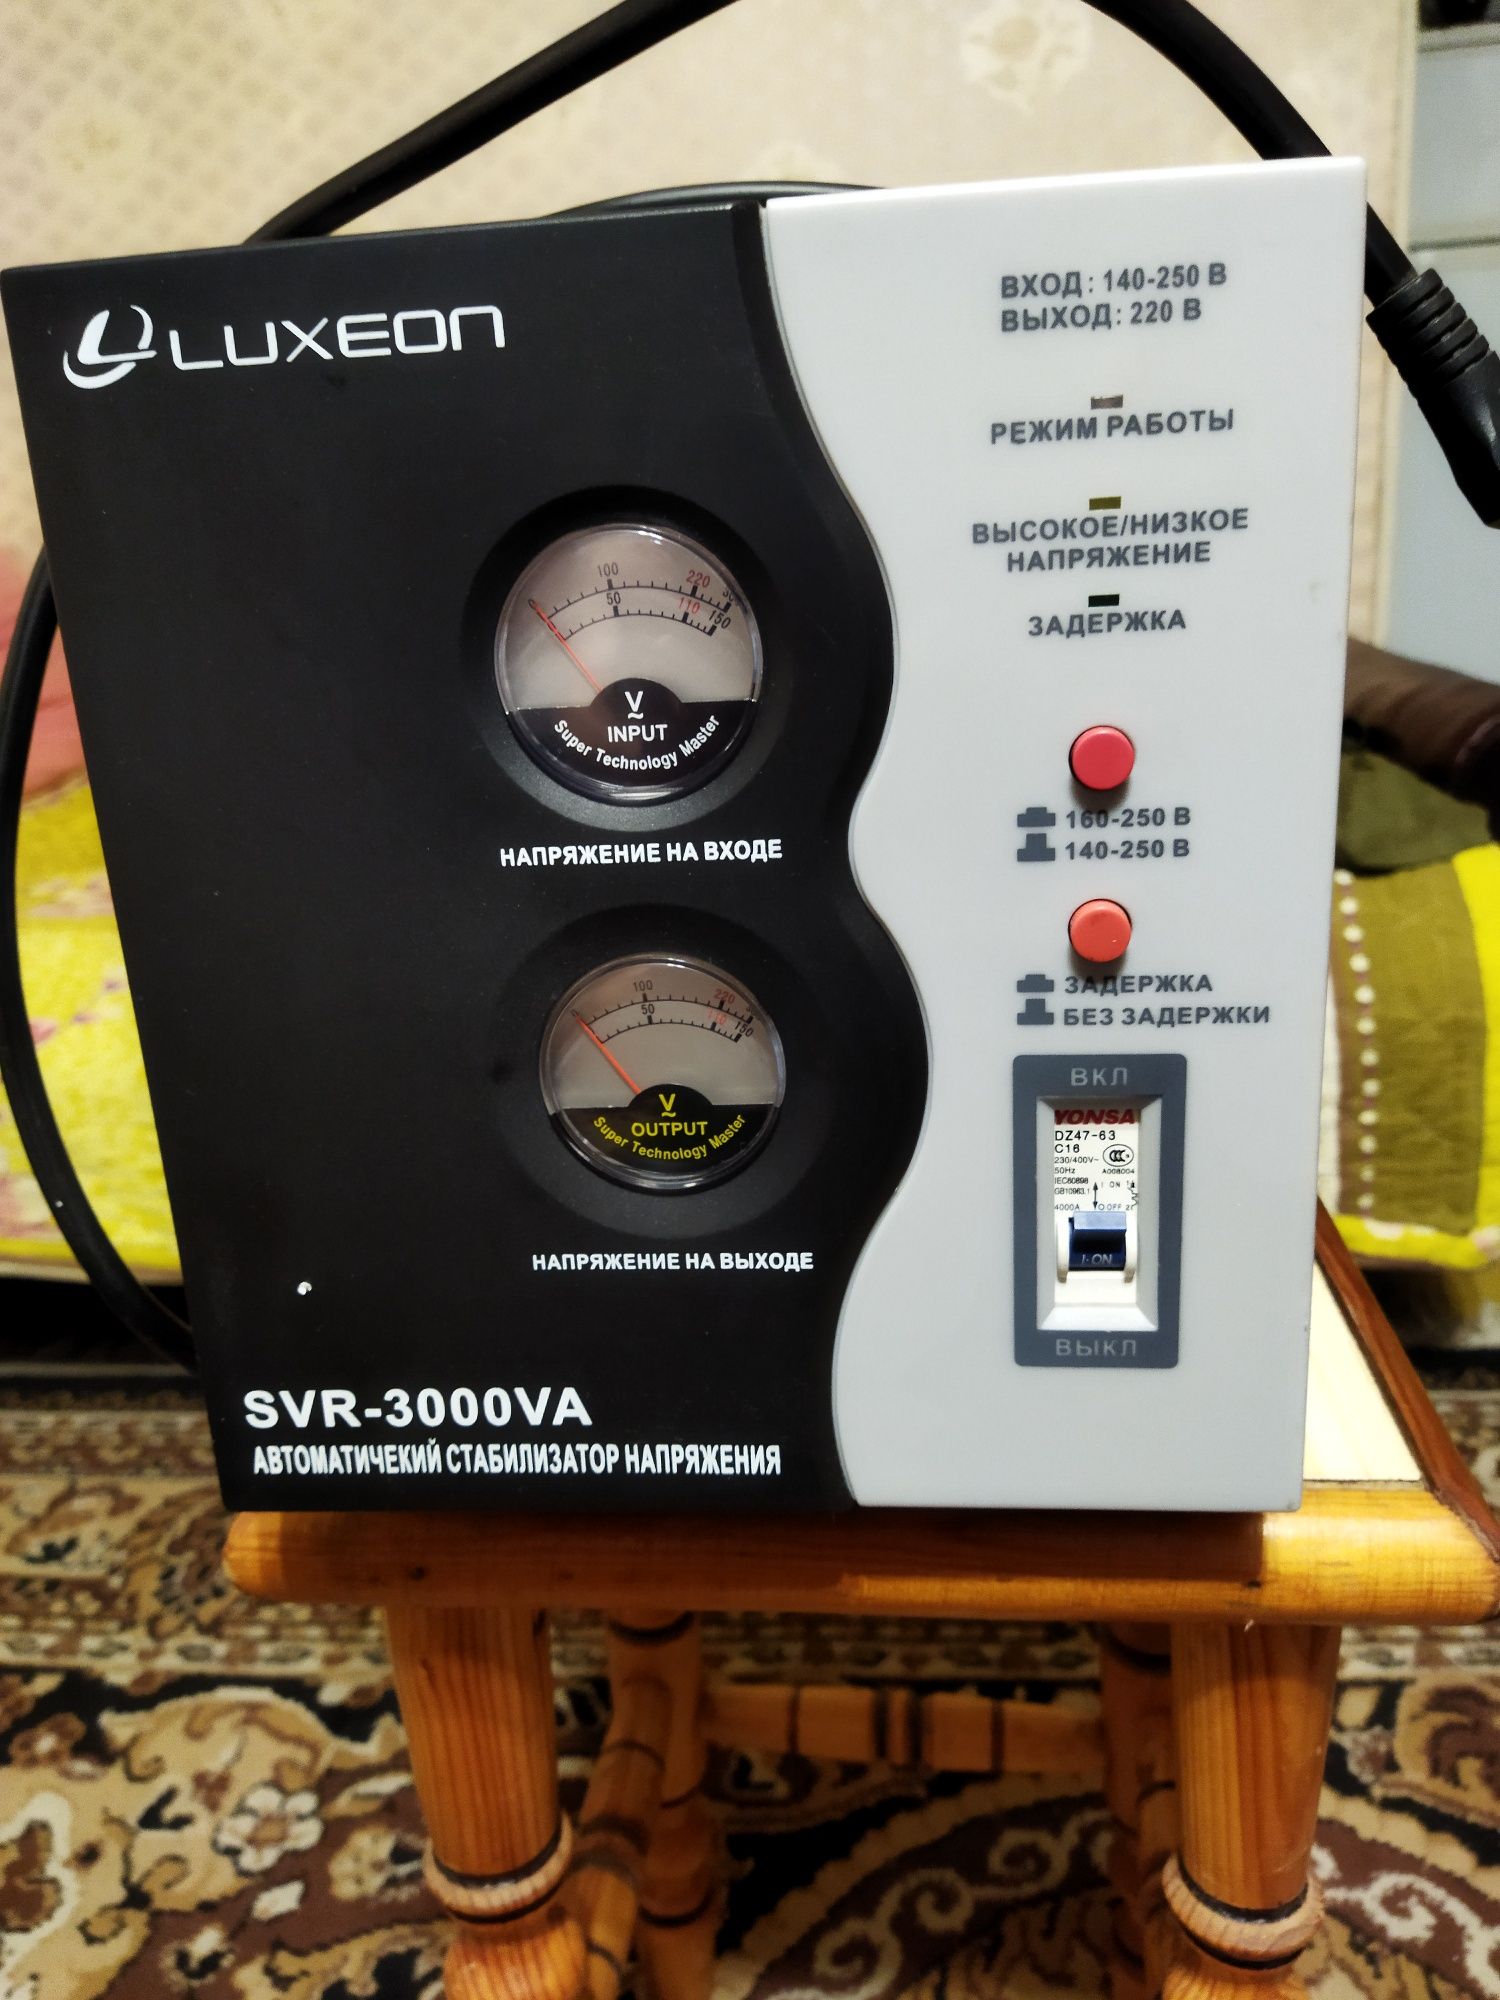 Продам Стабилизатор напряжения Luxeon SVR-3000VA,  в идеале